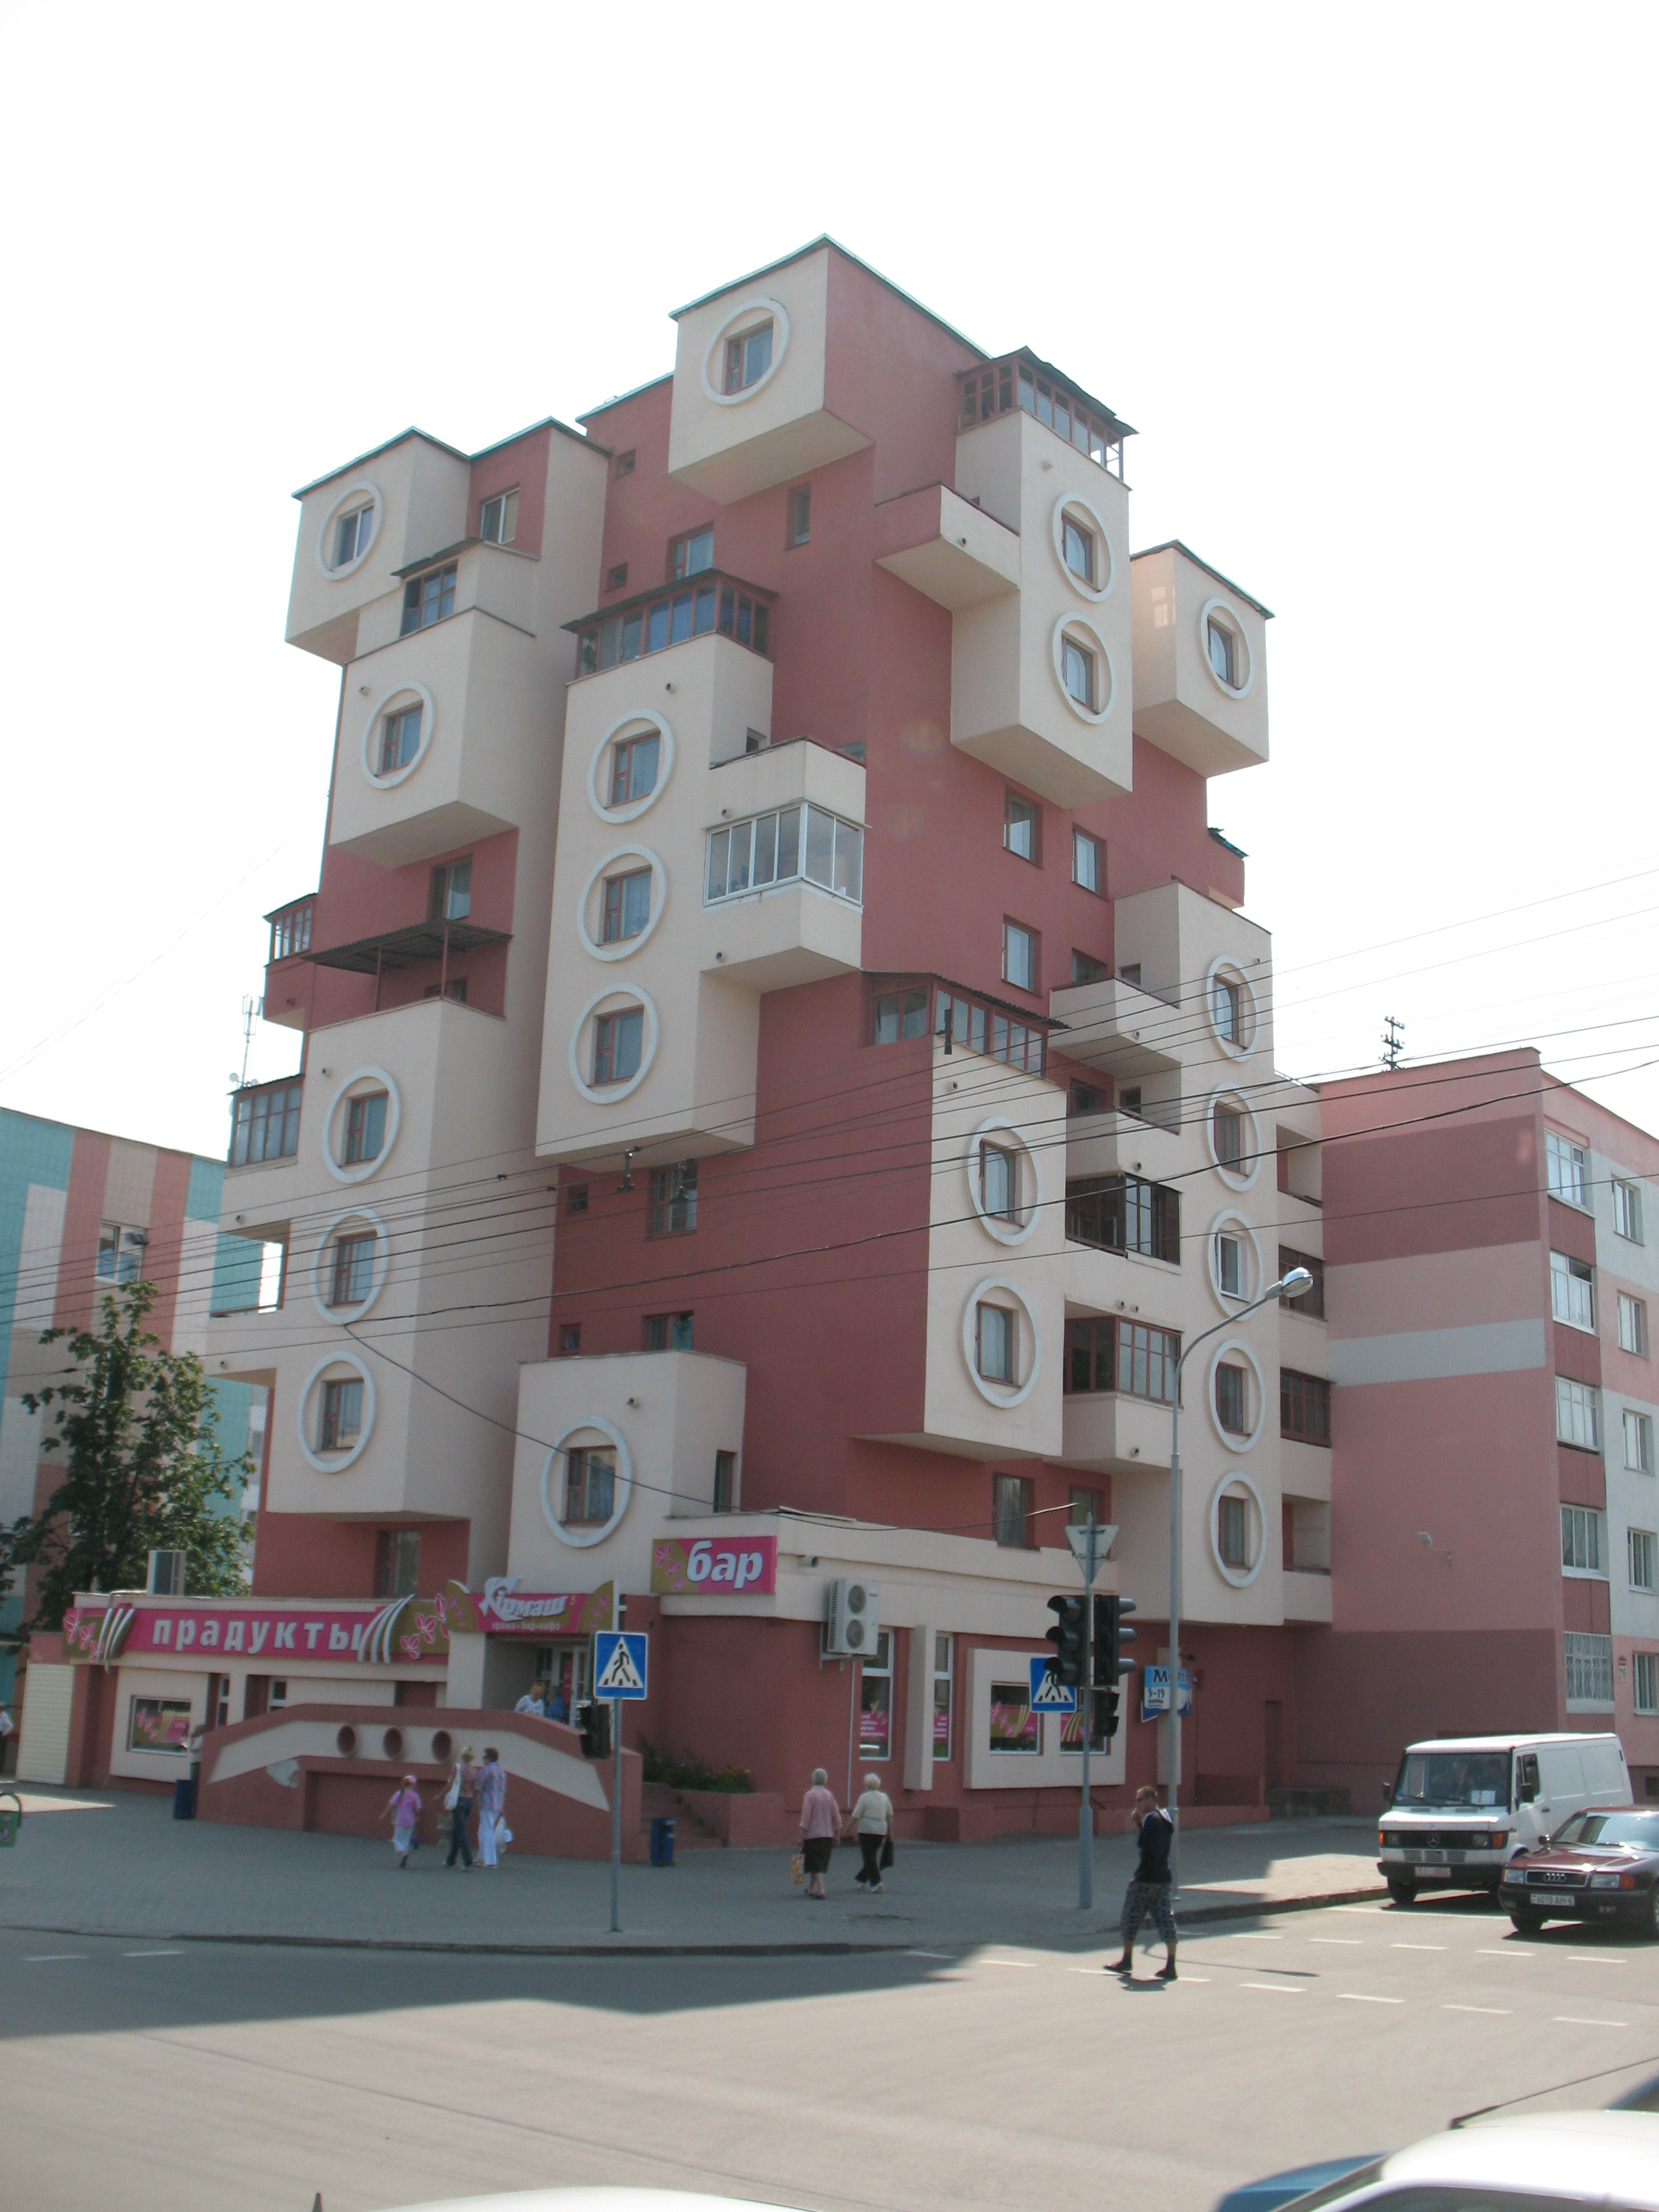 Дом-скворечник, архитектор Владимир Галущенко, 1985. Отсылка к Nakagin Capsule Tower, вид c севера